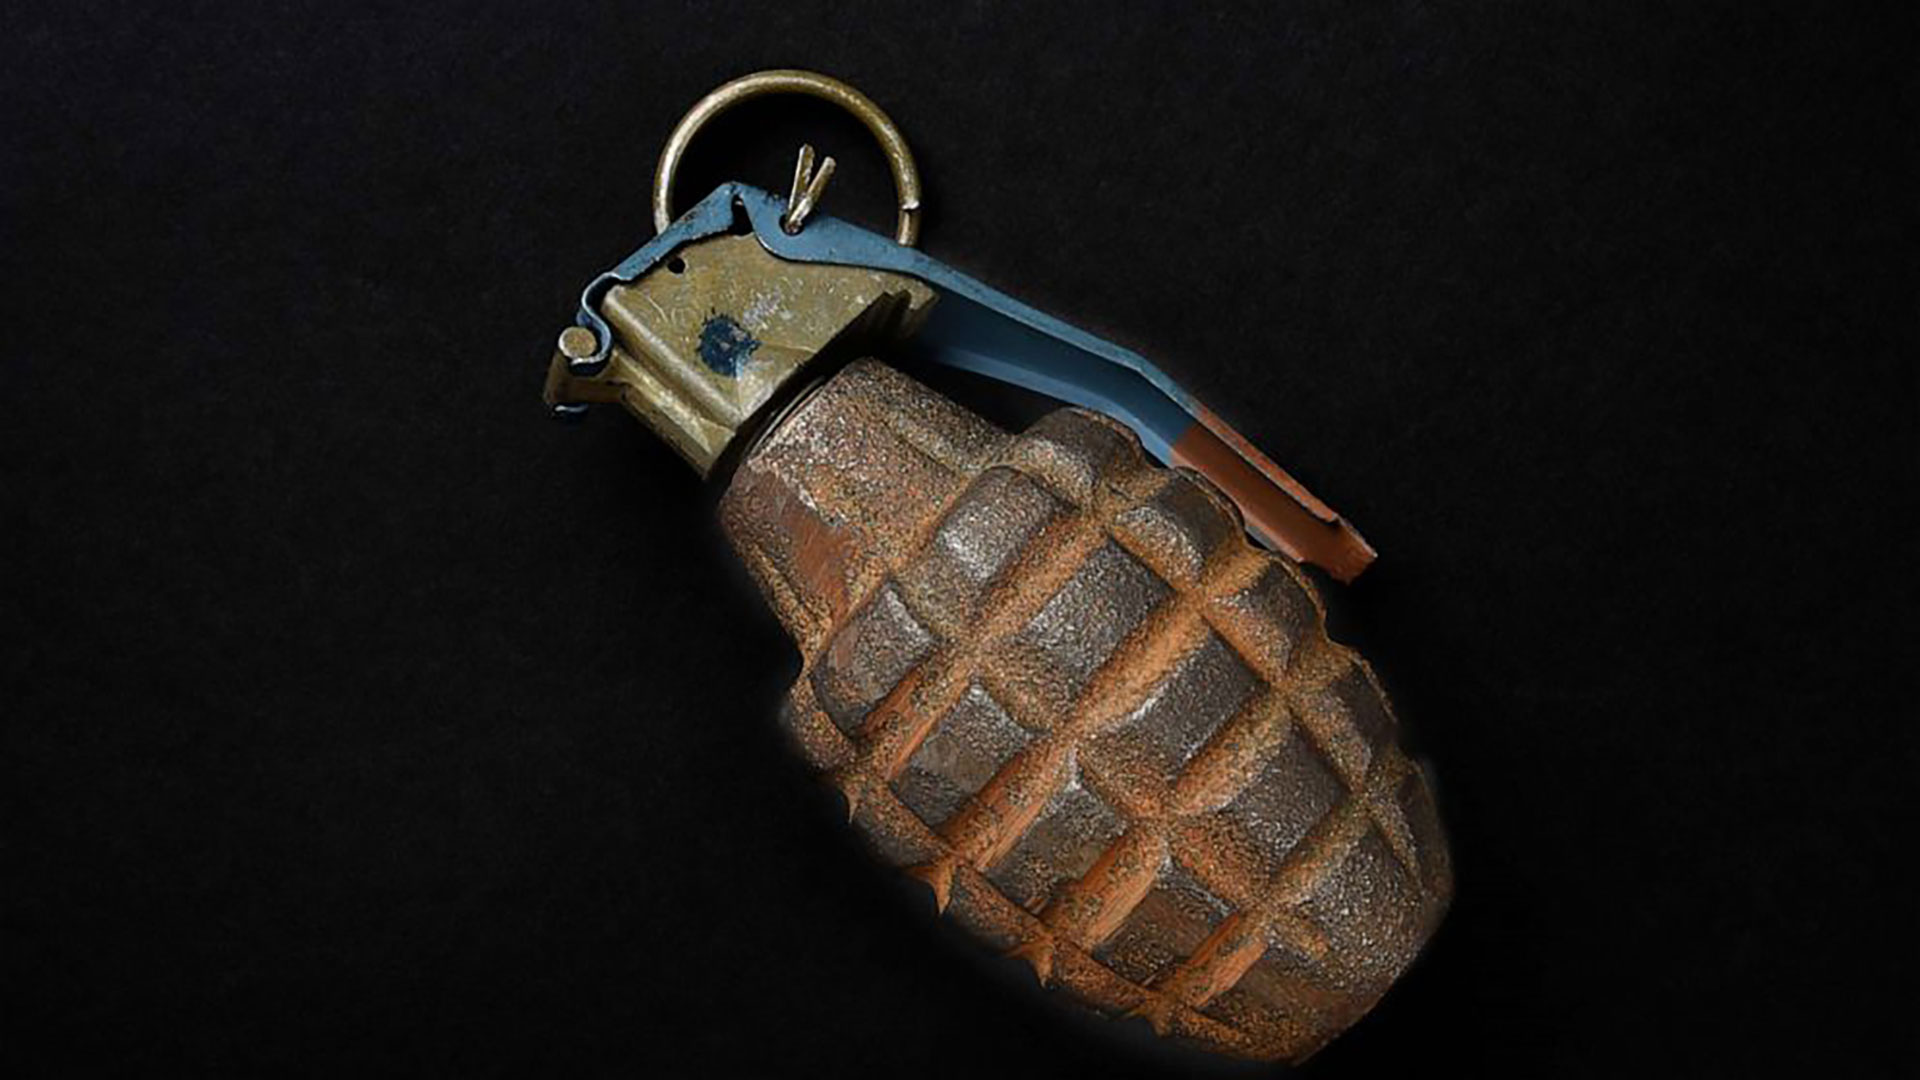 Hallaron una antigua granada de su abuelo y el descubrimiento terminó en tragedia